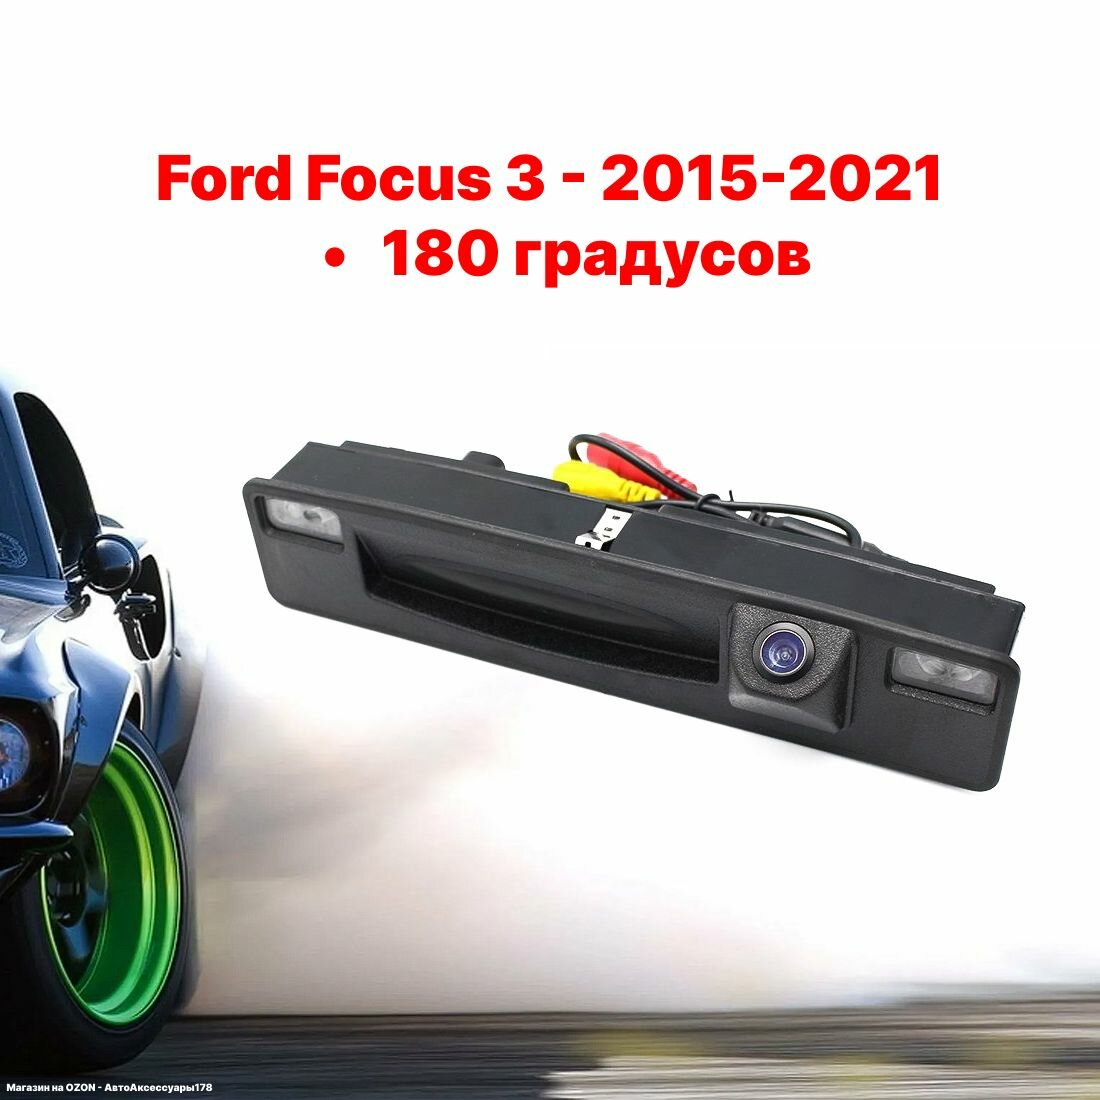 Камера заднего вида Форд Фокус 3 - 180 градусов (Ford Focus 3 - 2015-2021)